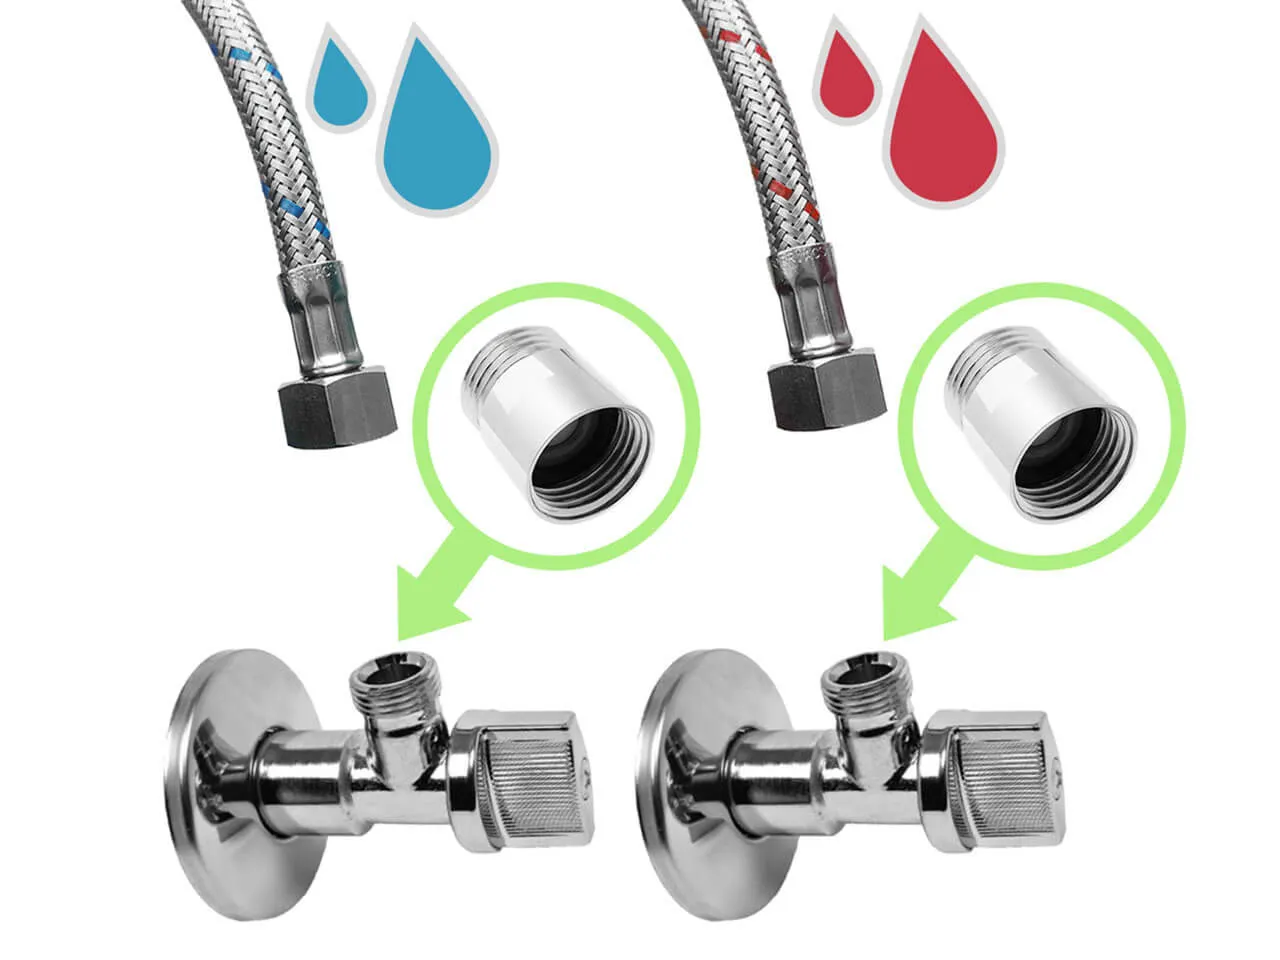 Régulateur de débit pour robinets EcoVand 5.7 l/min filetage 1/2″ avec clapet anti-retour